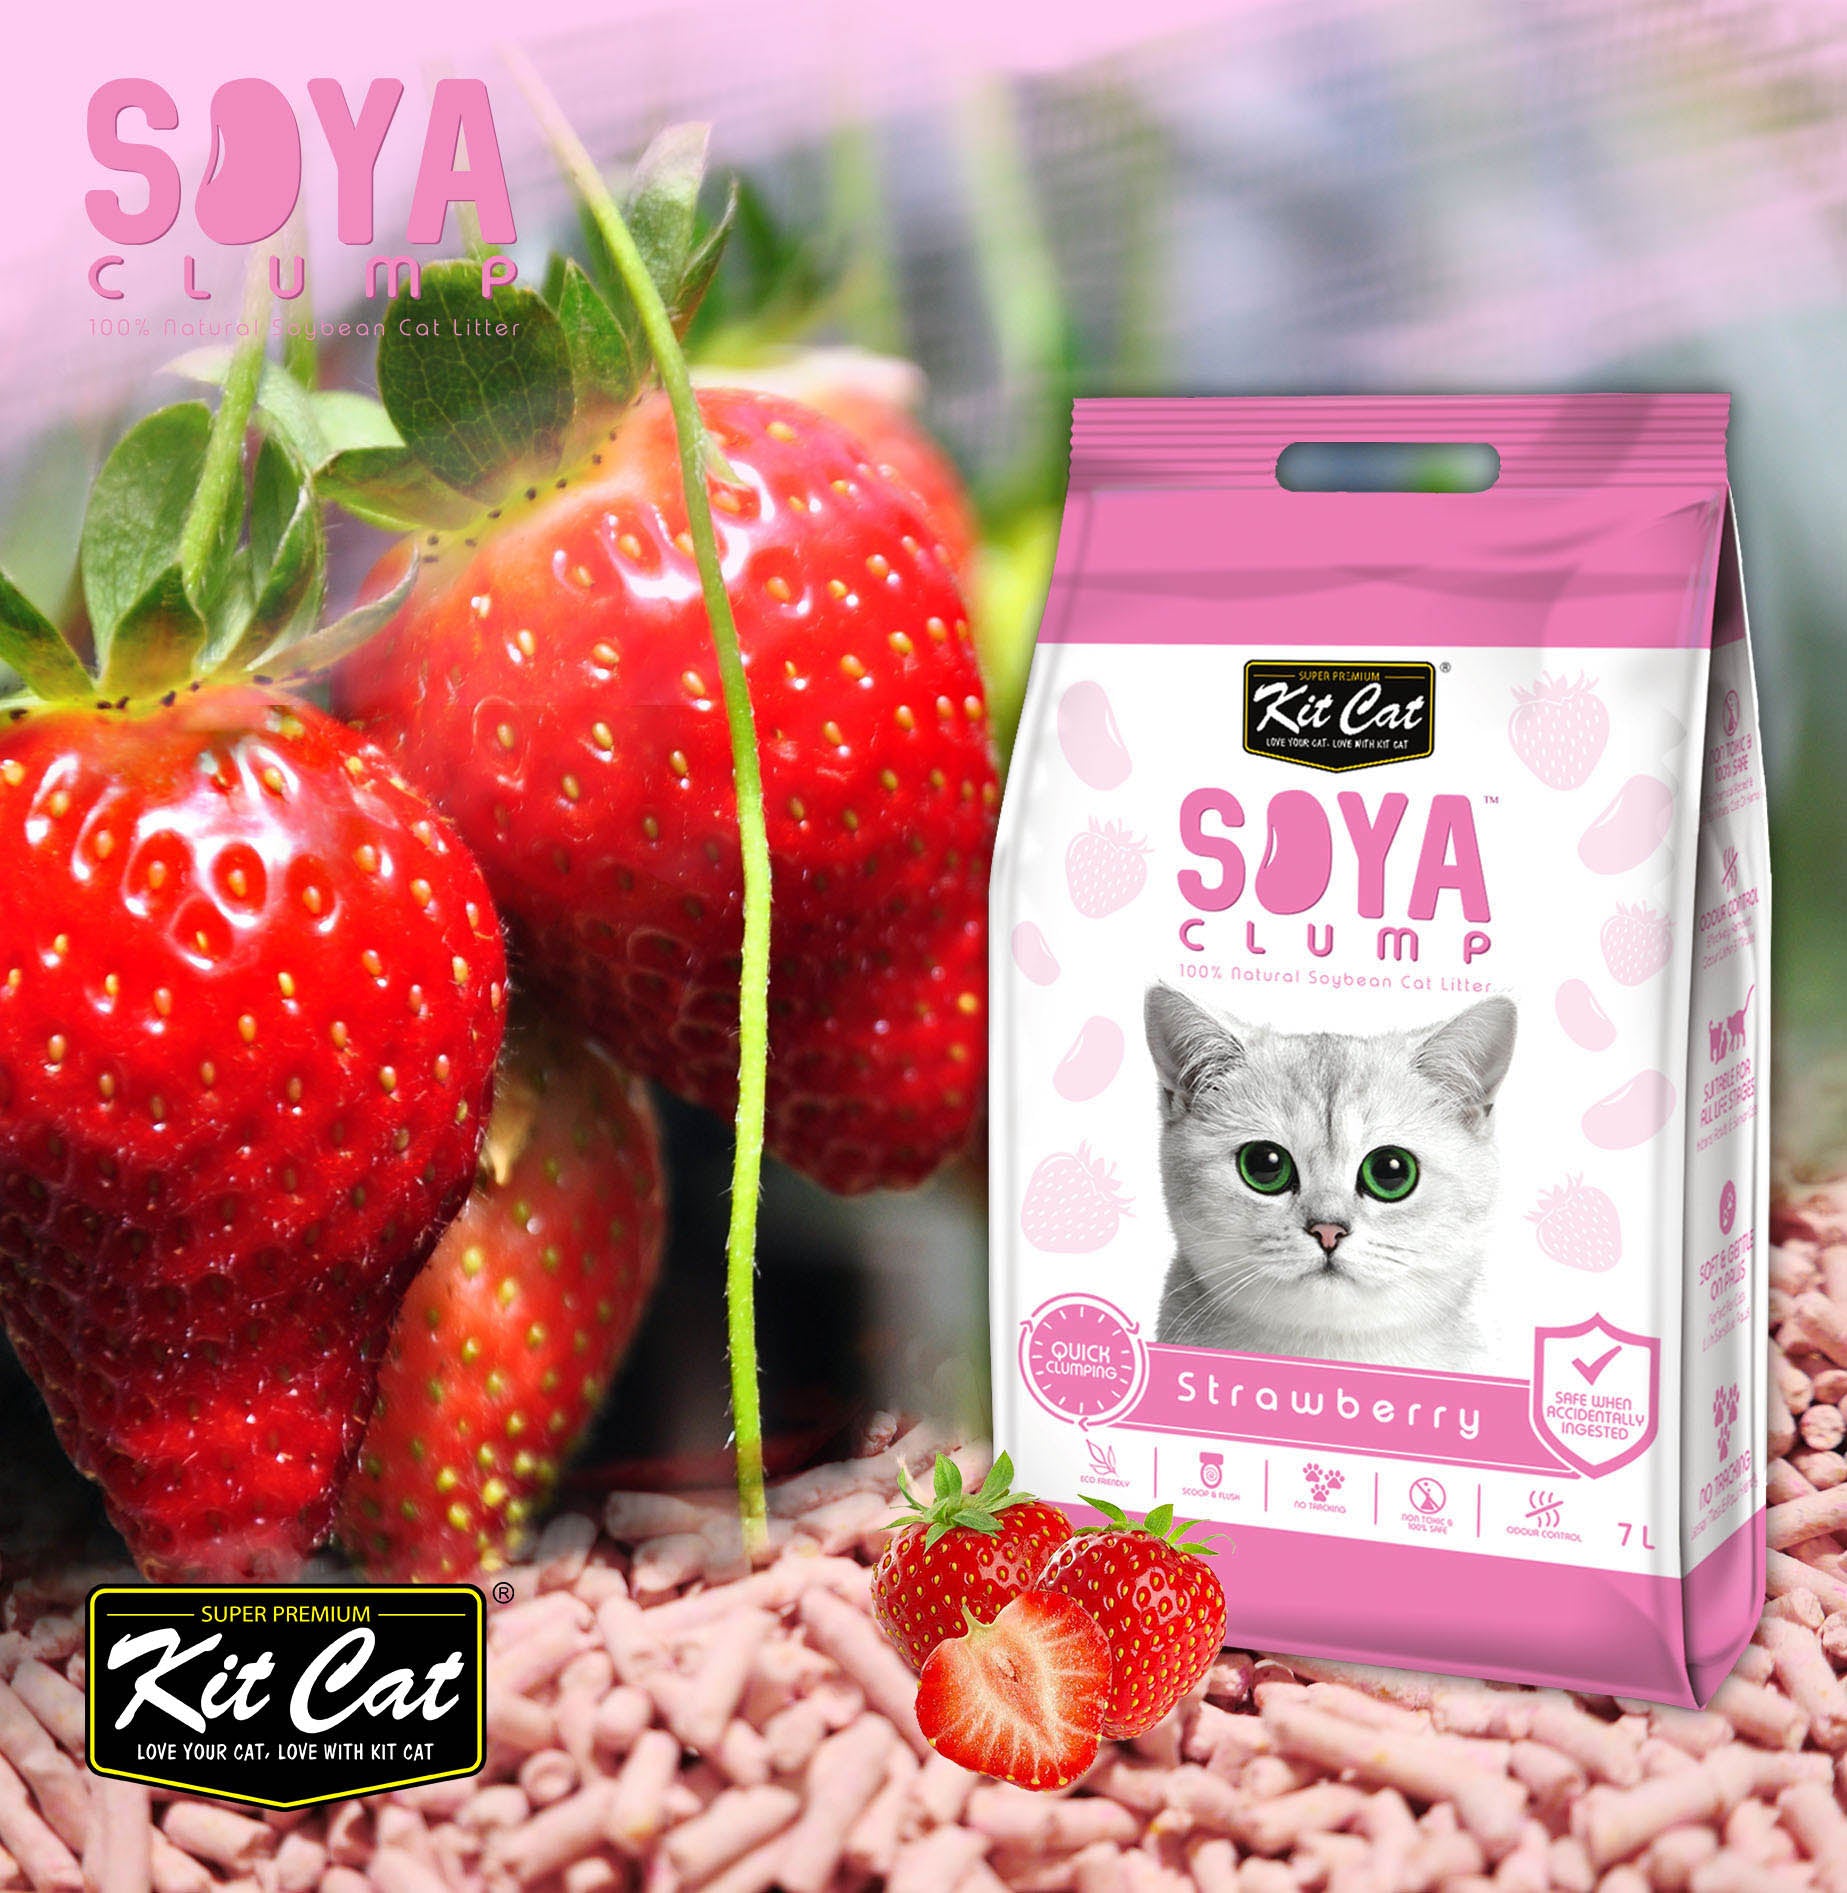 Kit Cat Soya Cat Litter - Strawberry (7087436103841)